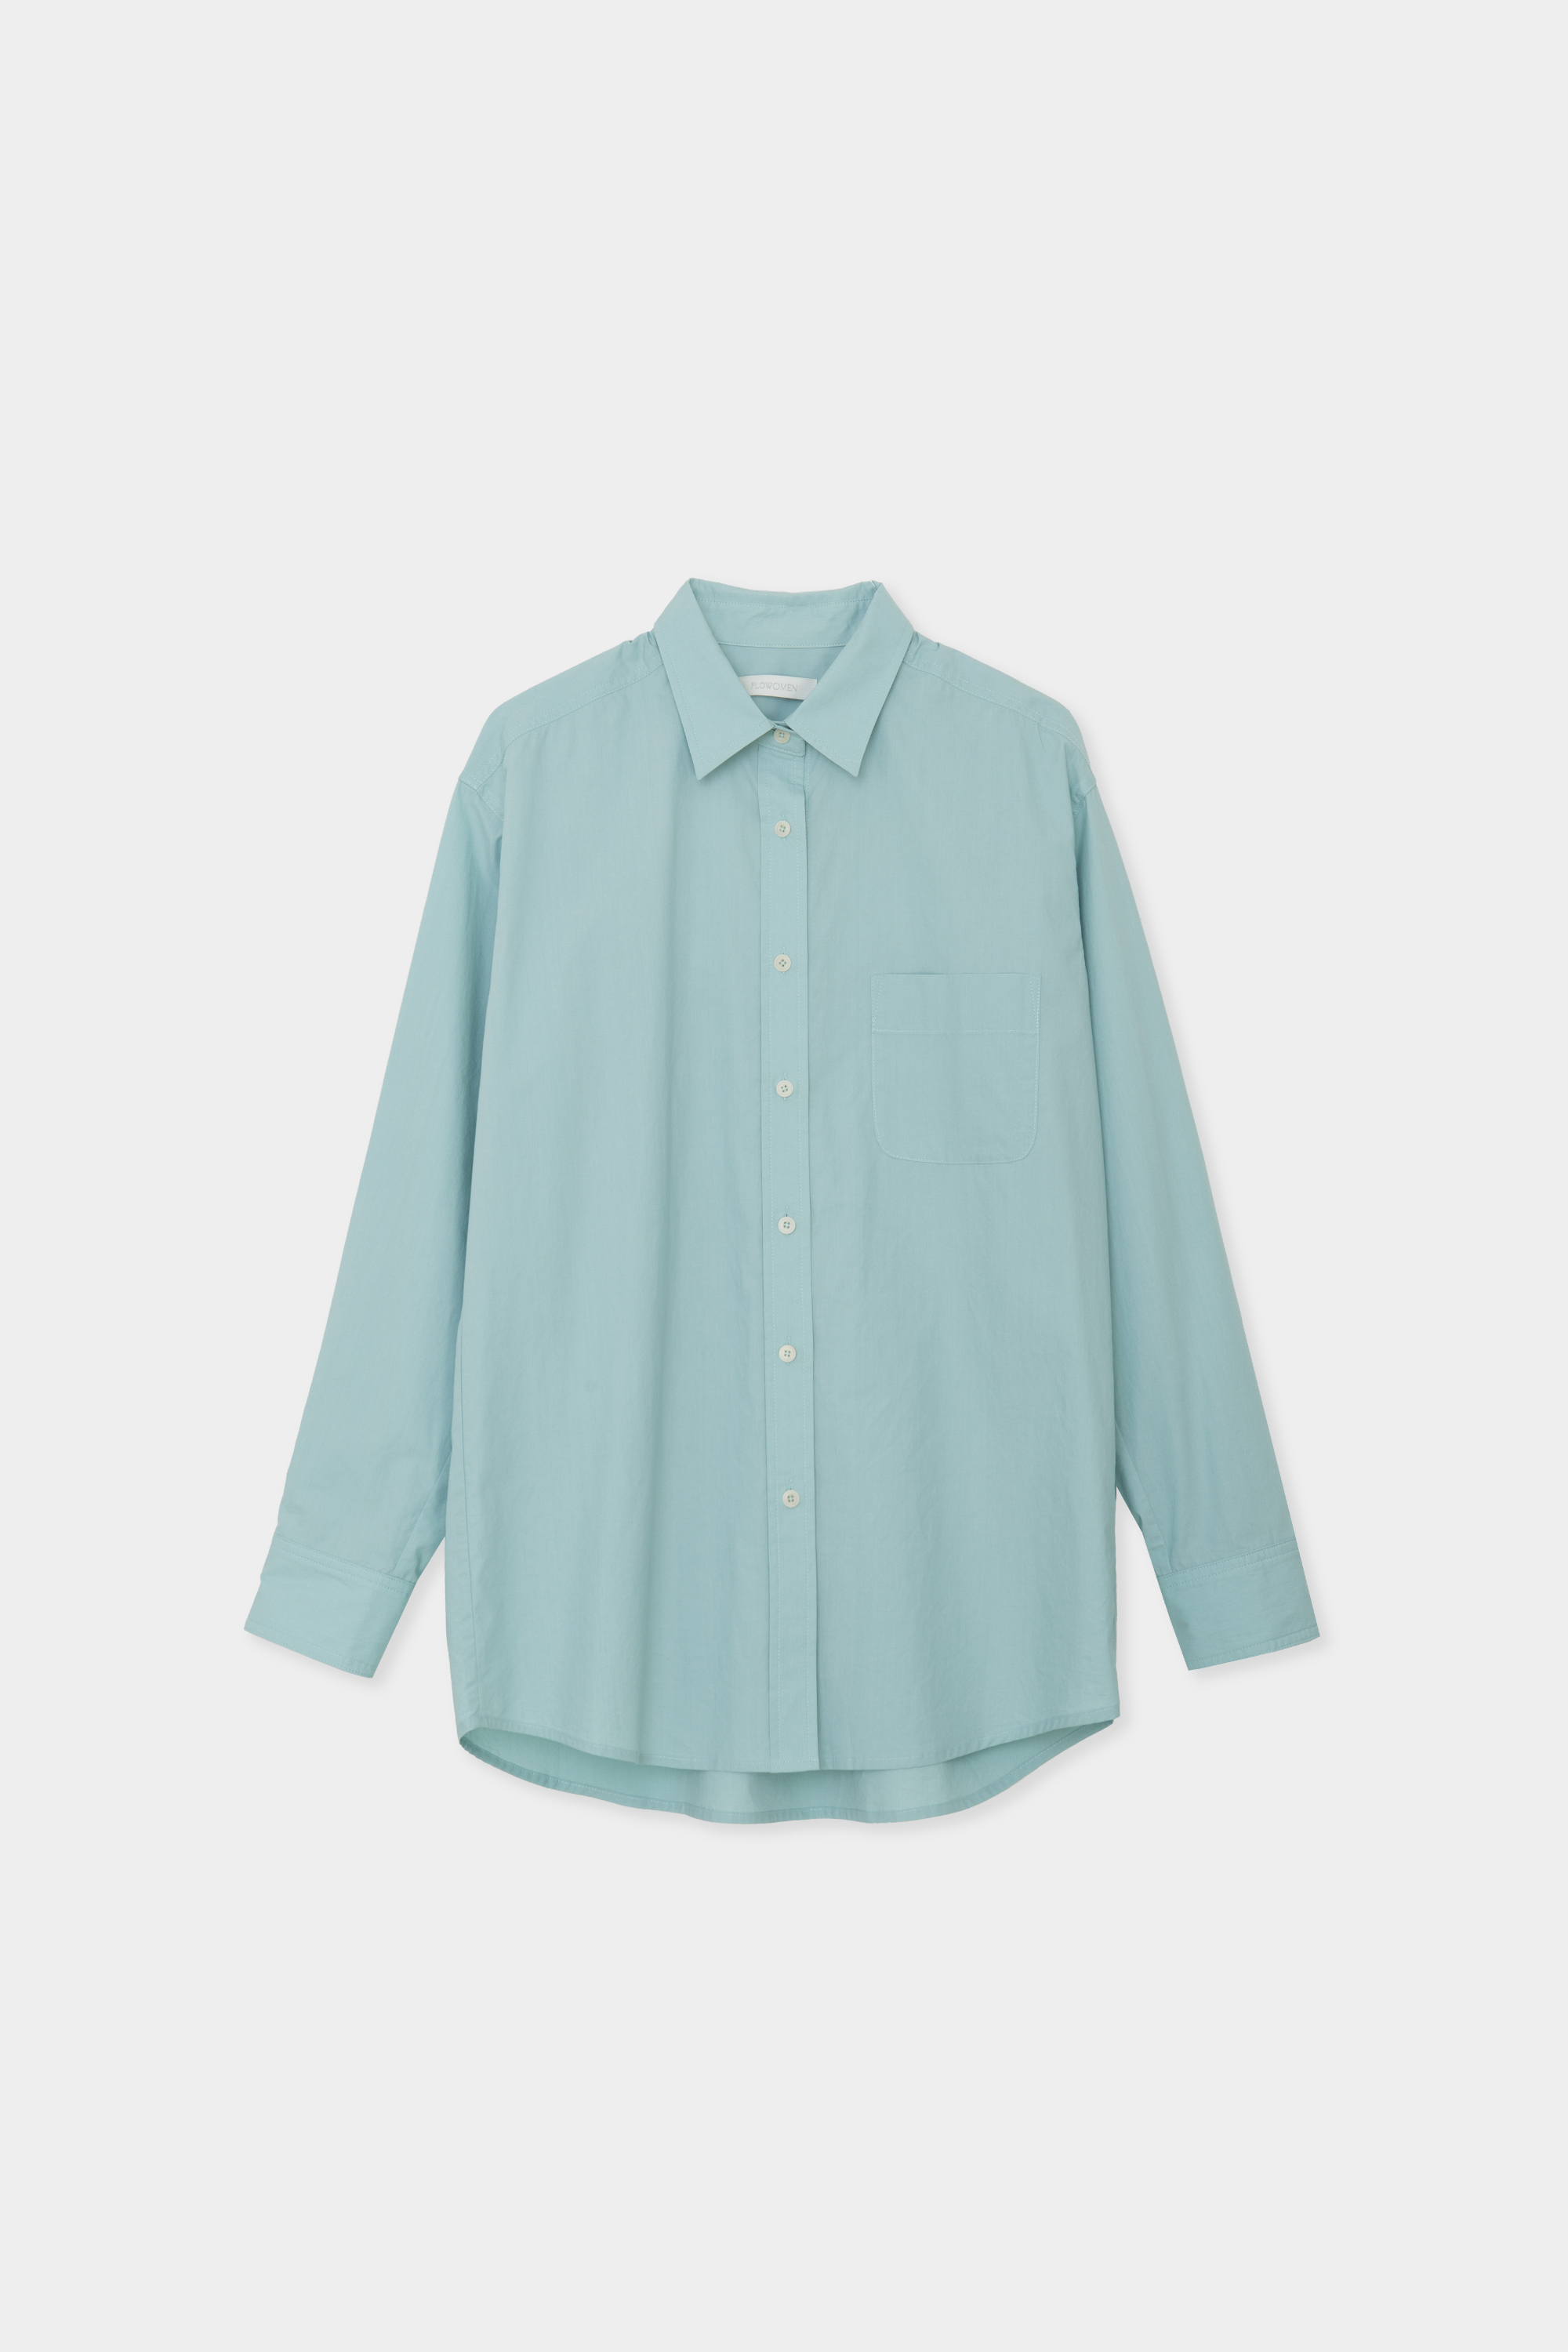 Color Point Cotton Shirt (Turquoise Blue)